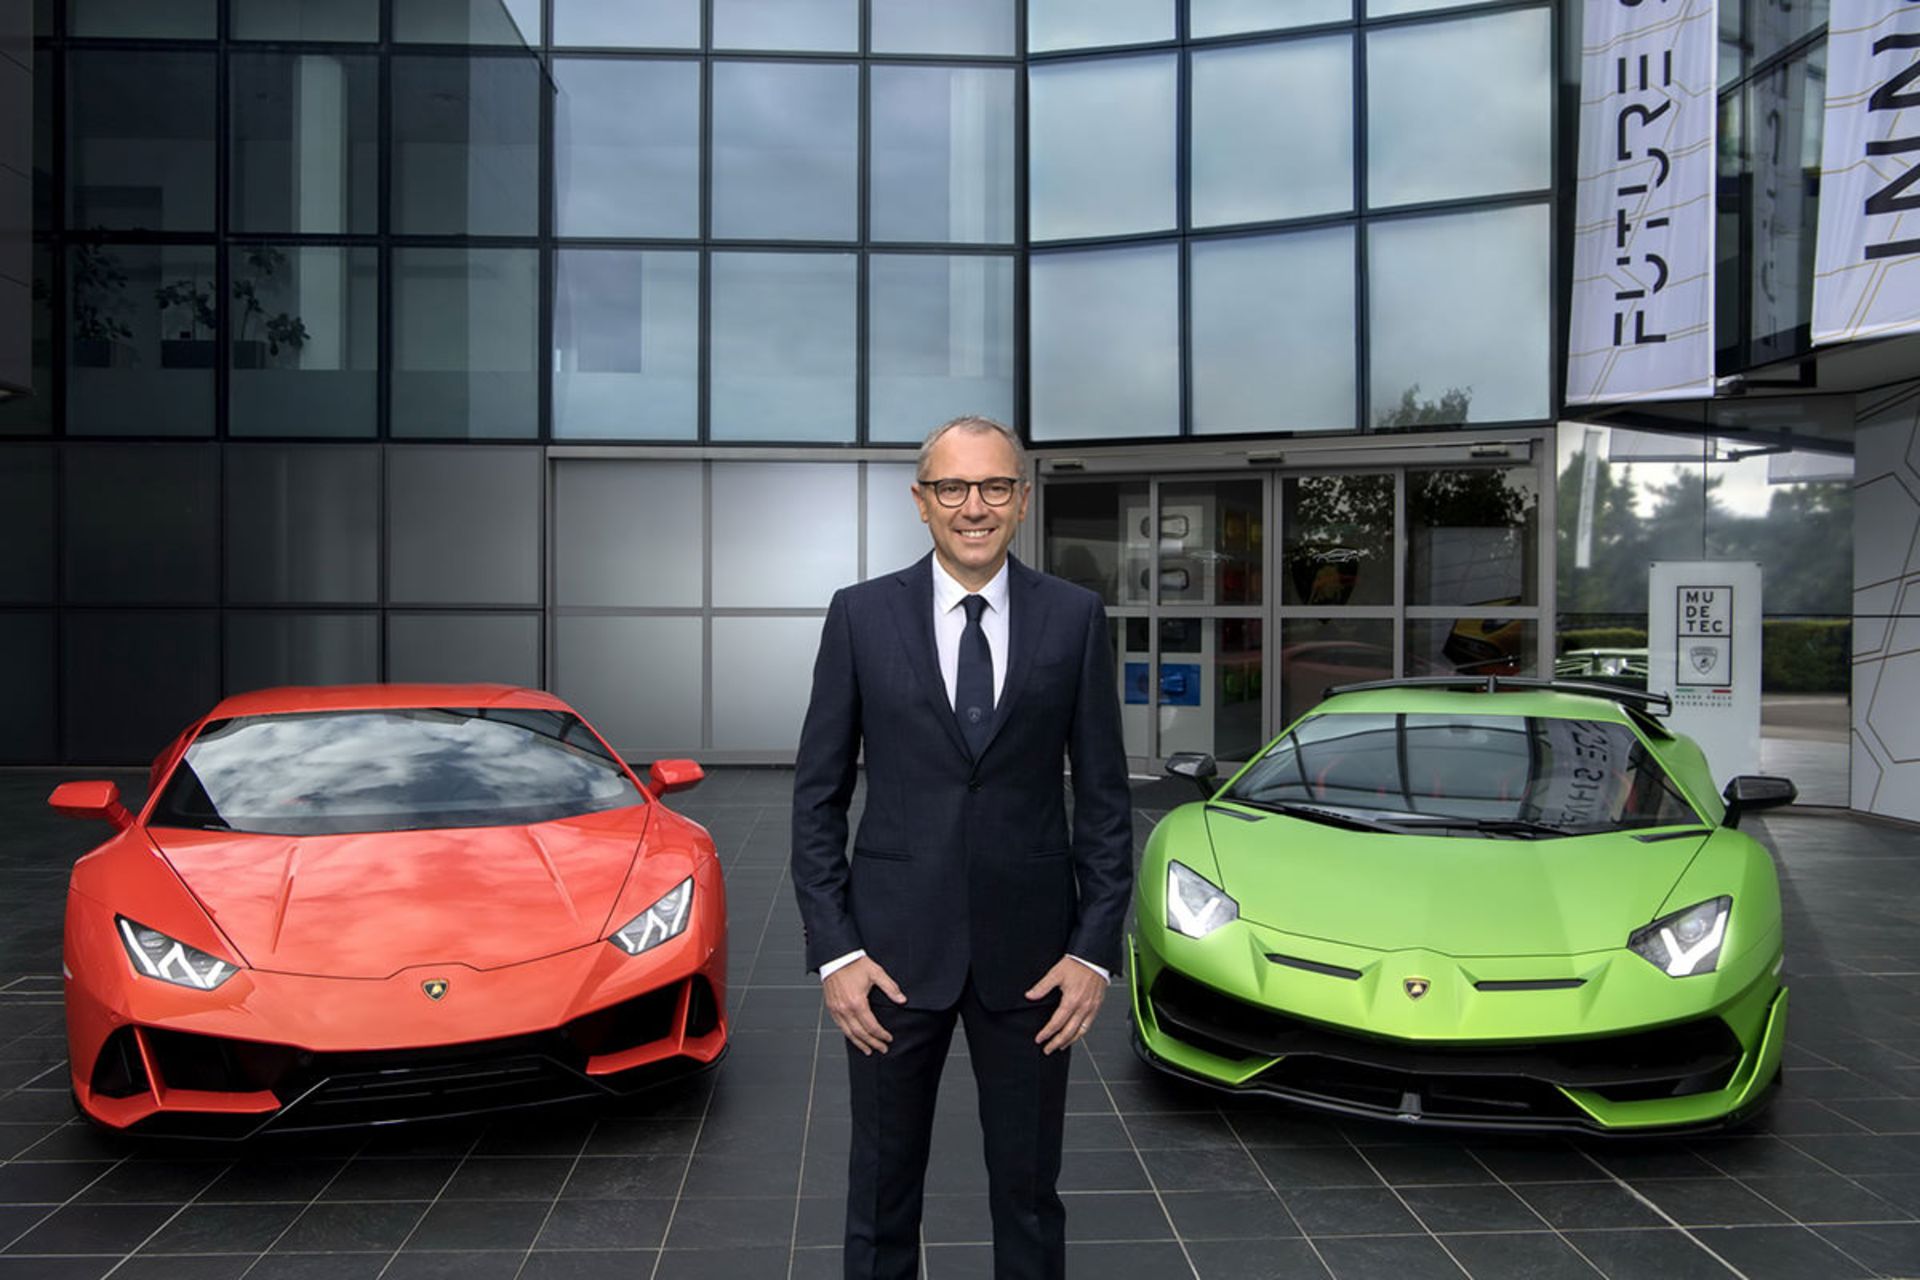 استفانو دومنیکالی مدیر عامل لامبورگینی / Stefano Domenicali Lamborghini  در کنار سوپراسپرت اونتادور قرمز و سبز رنگ